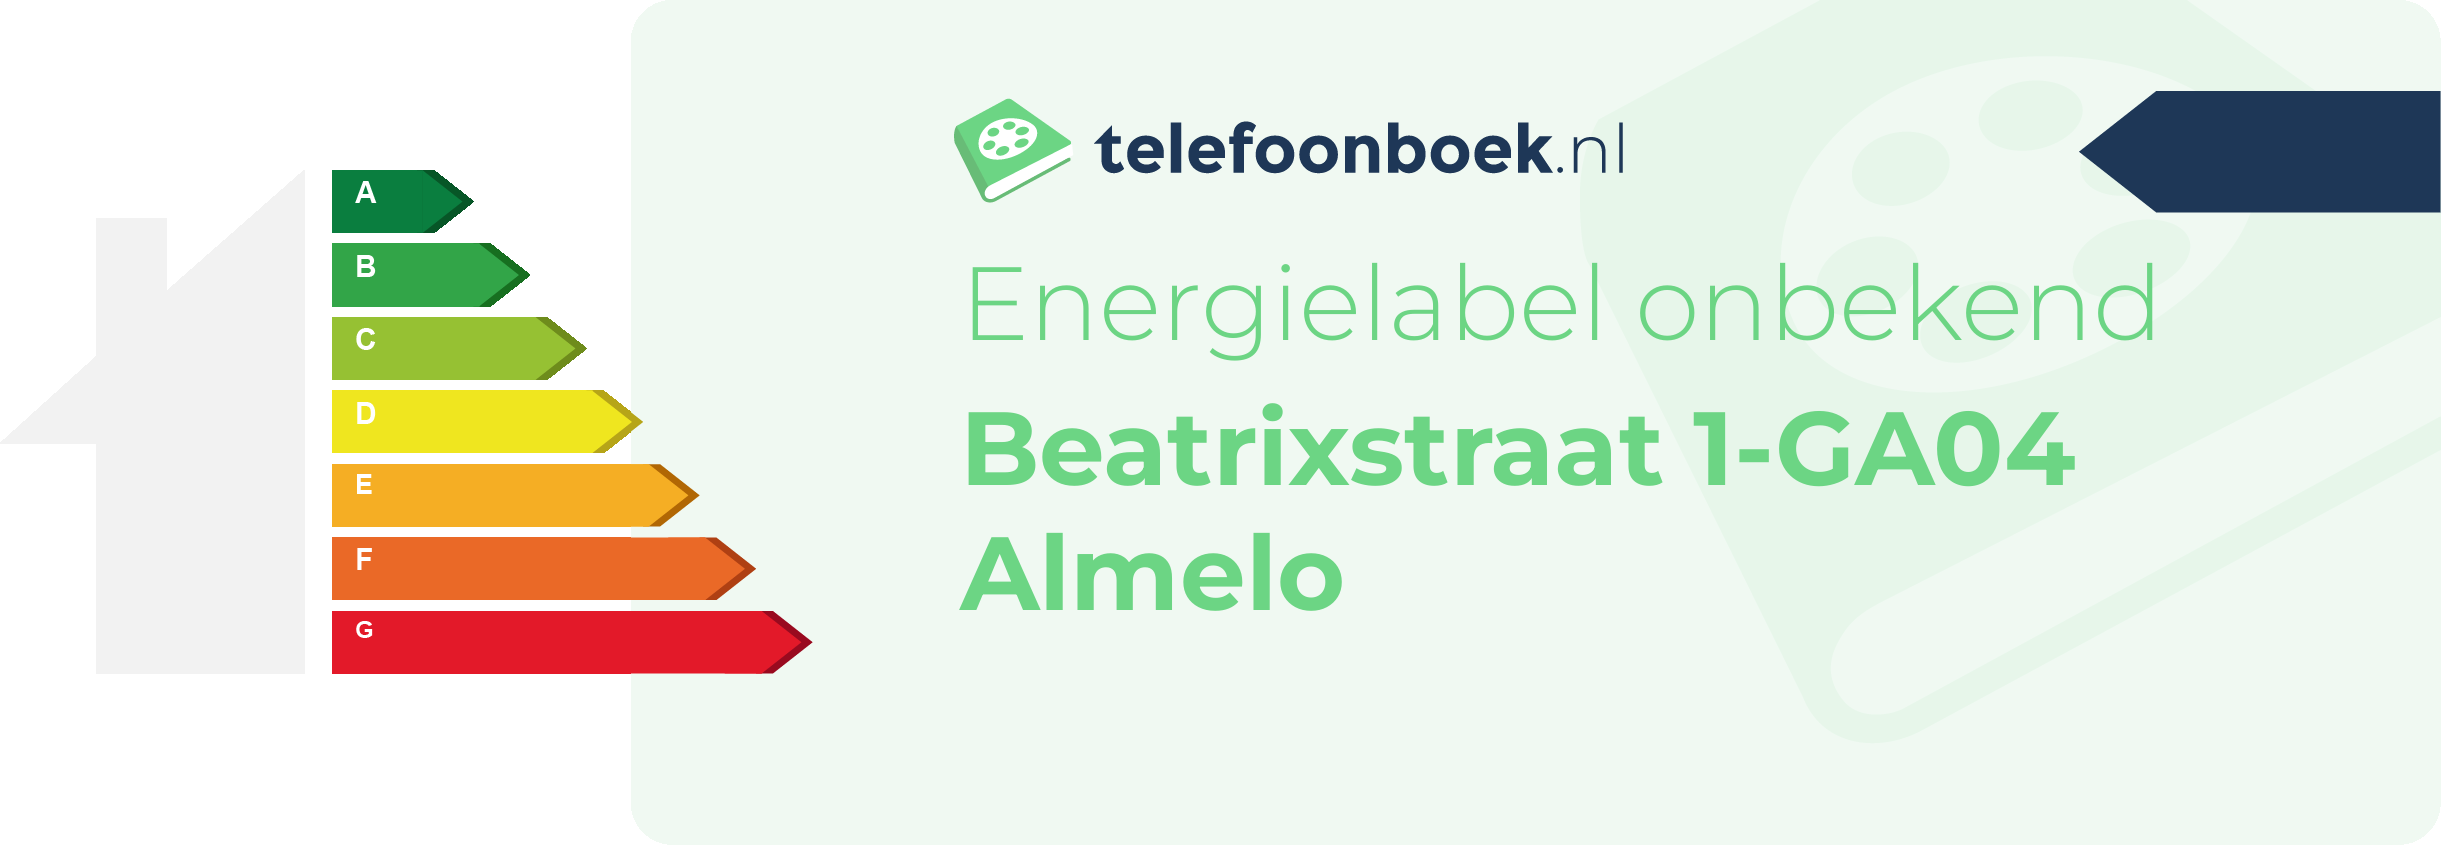 Energielabel Beatrixstraat 1-GA04 Almelo